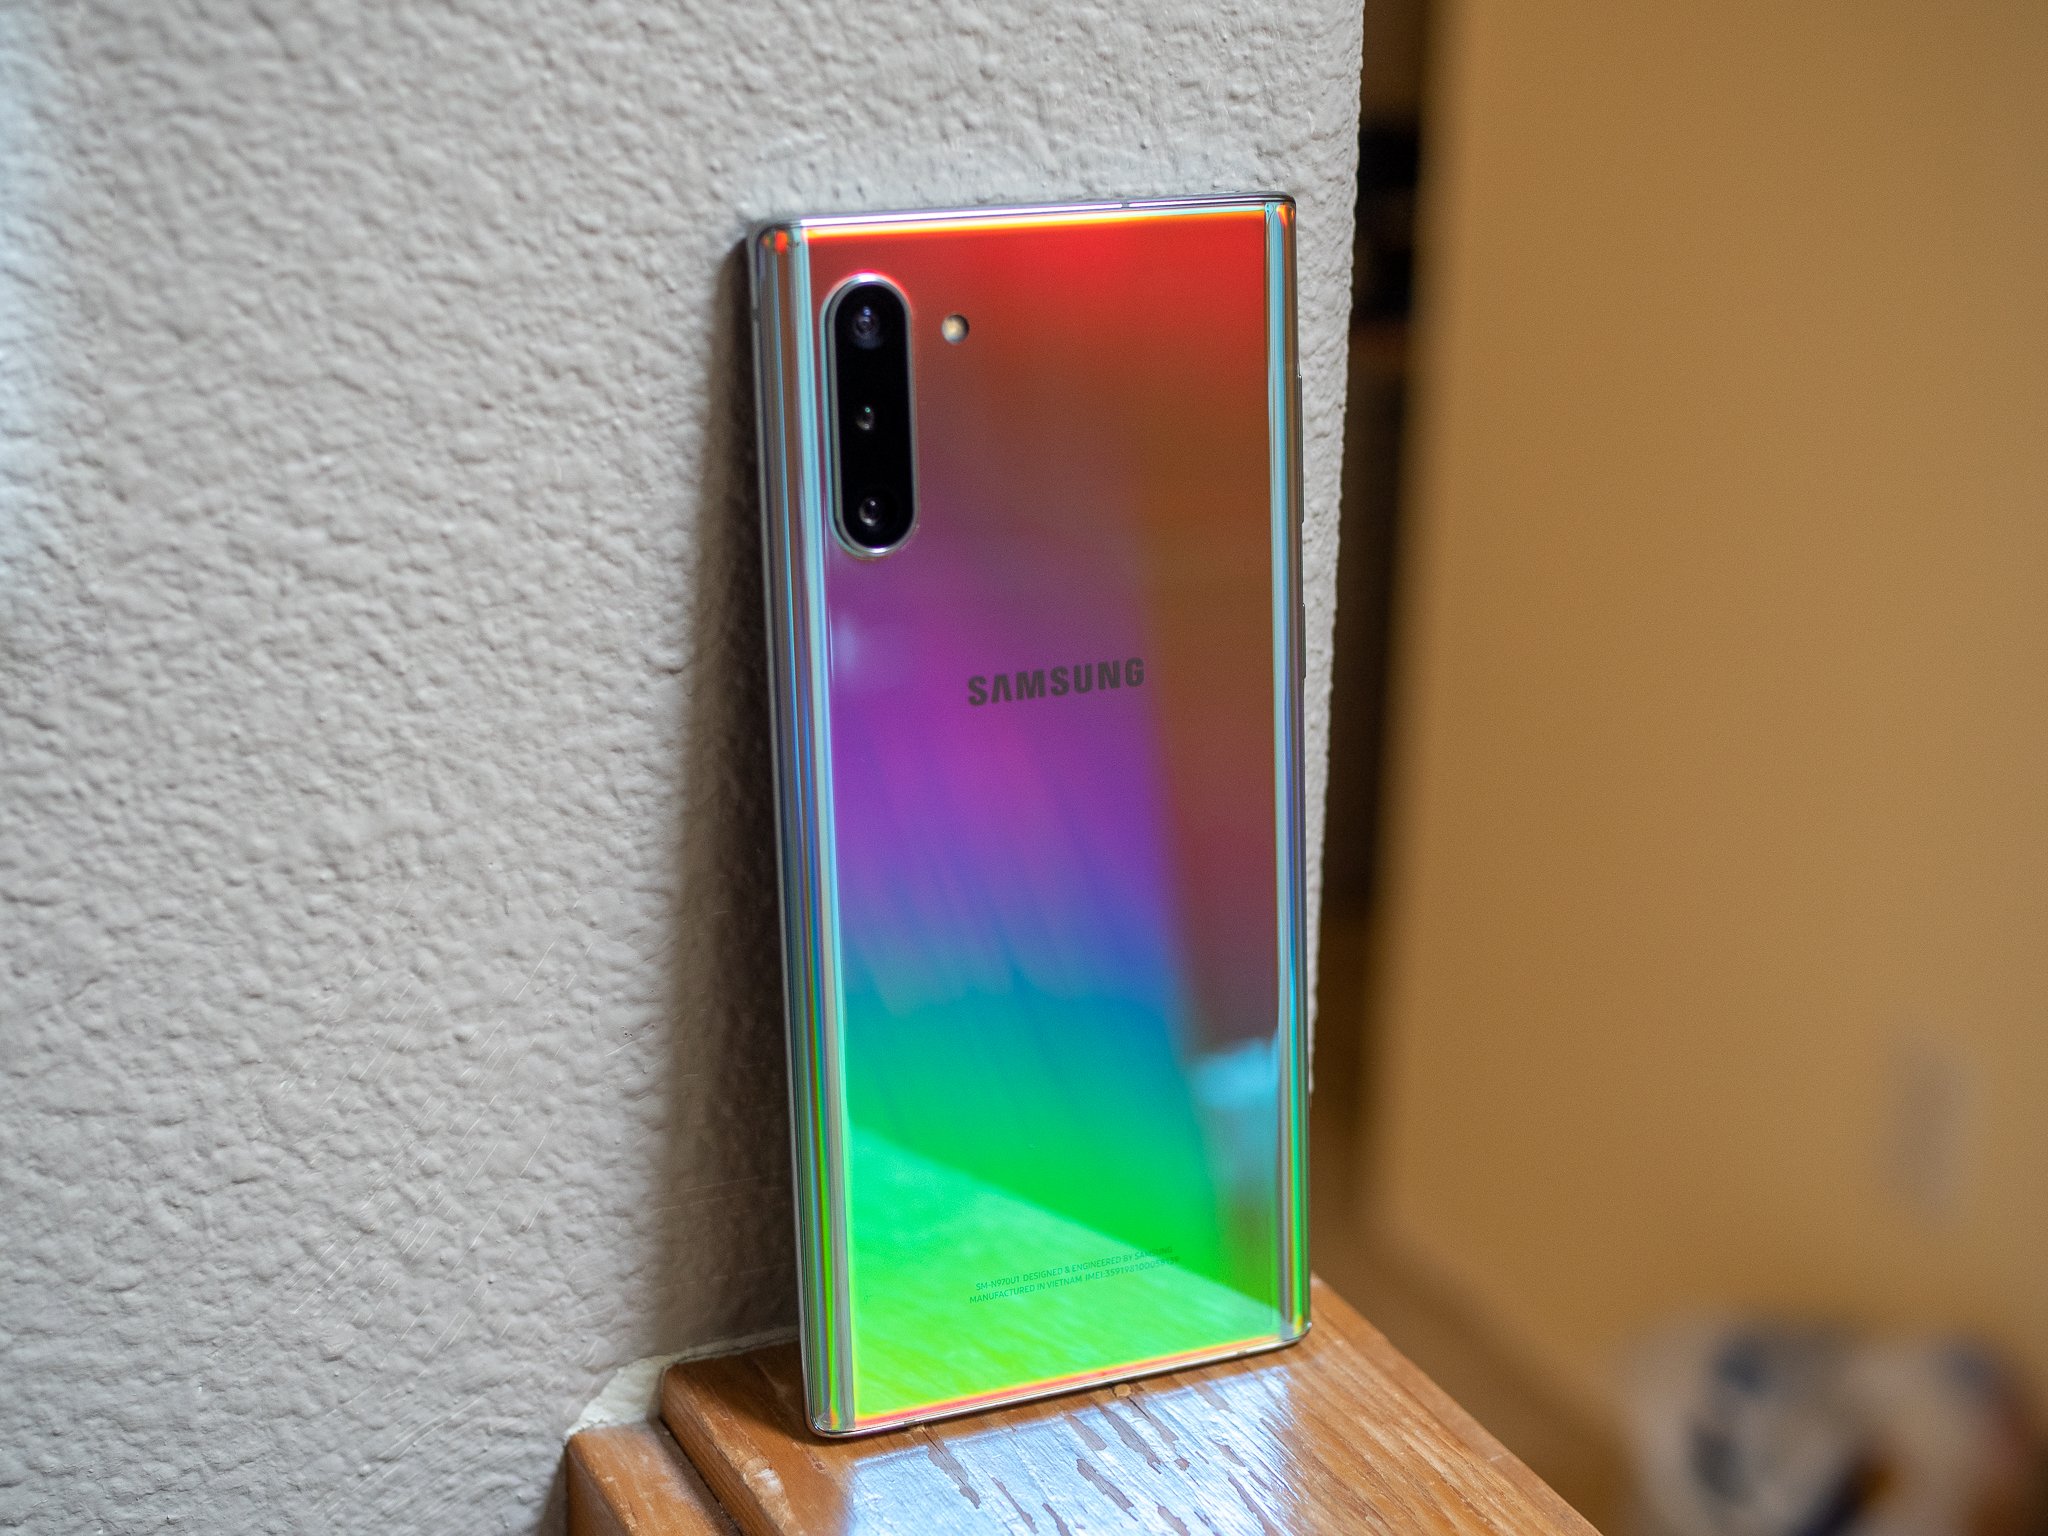 Samsung Galaxy Note 10 in Aura Glow